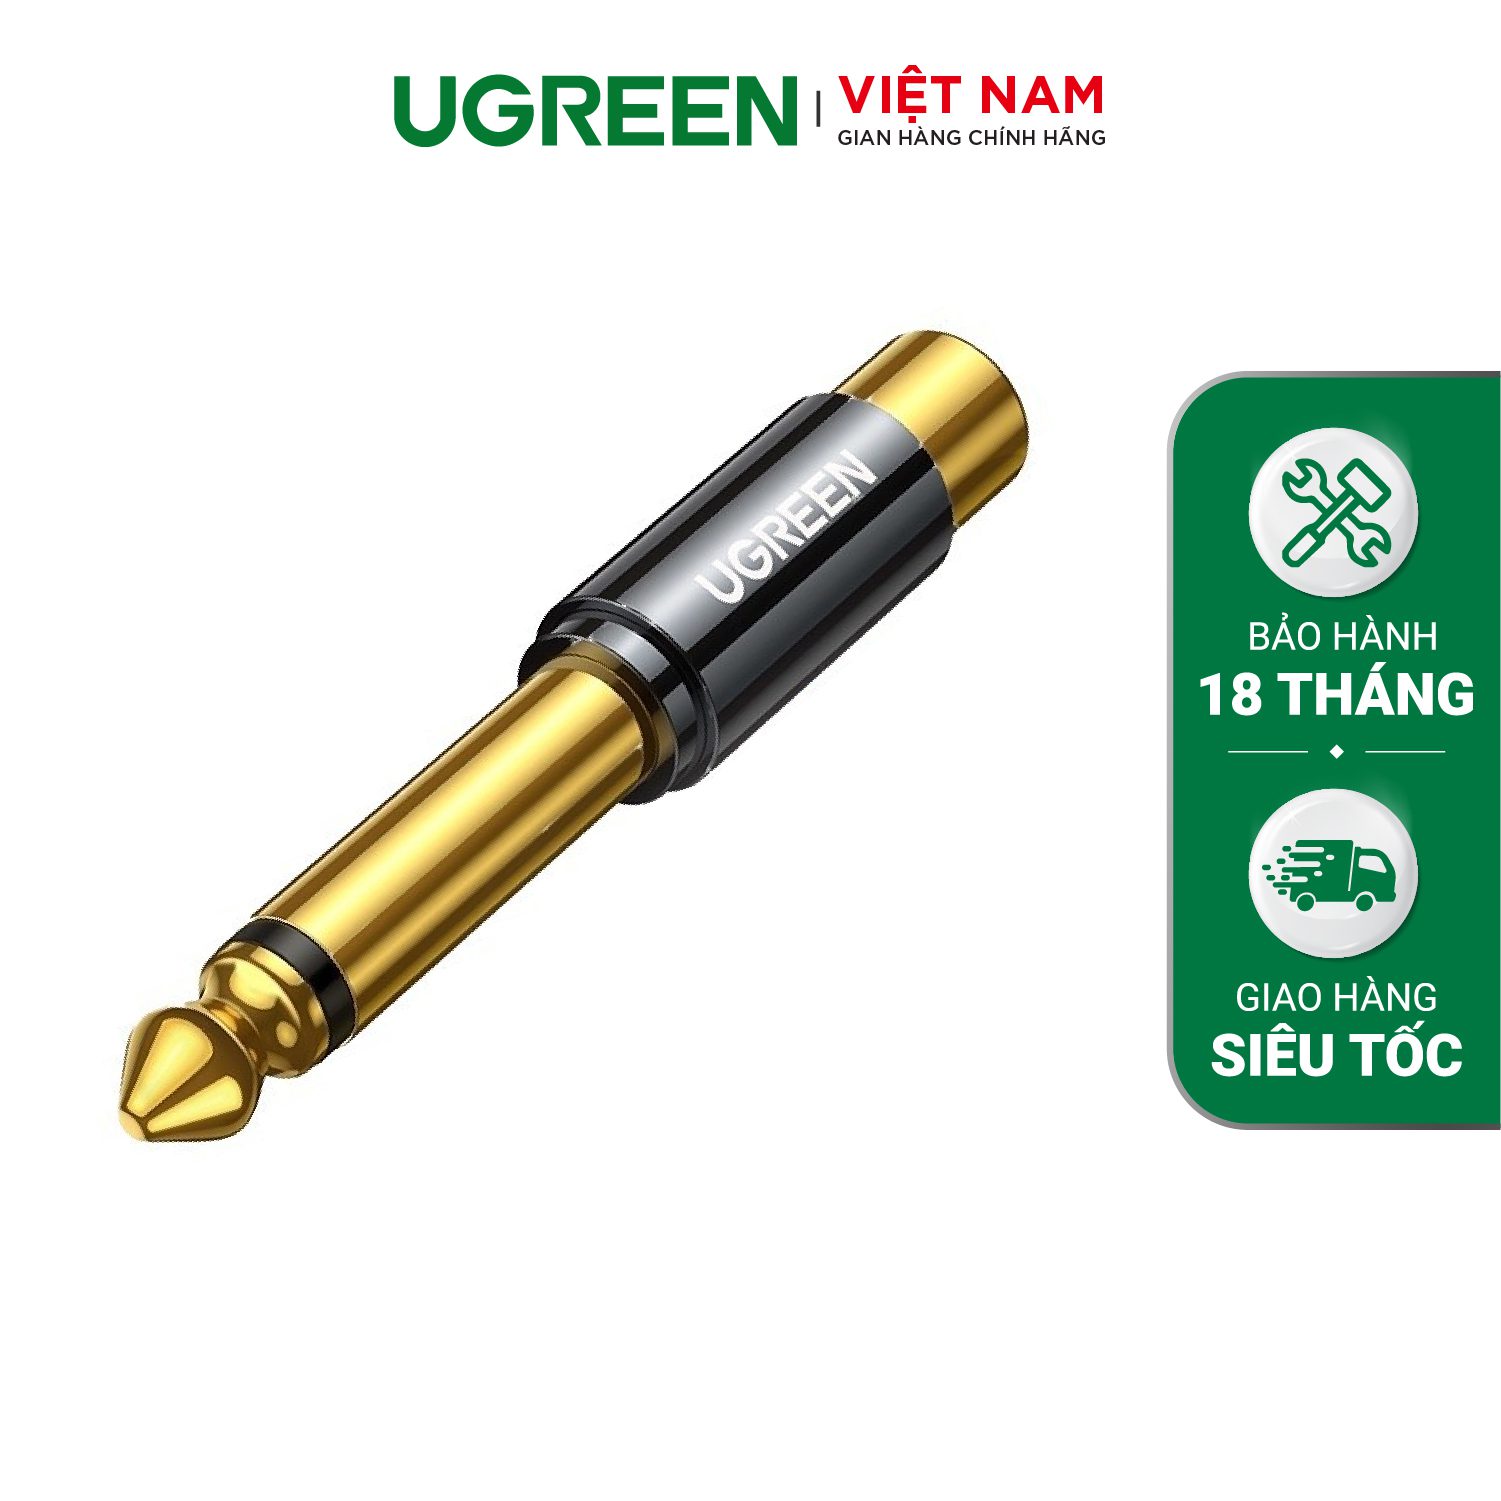 Đầu chuyển âm thanh UGREEN AV169 - Chuyển từ RCA sang 6.5mm - Đầu cáp mạ vàng, chống suy hao tín hiệu - Hàng phân phối chính hãng - Bảo hành 18 tháng – Ugreen Việt Nam